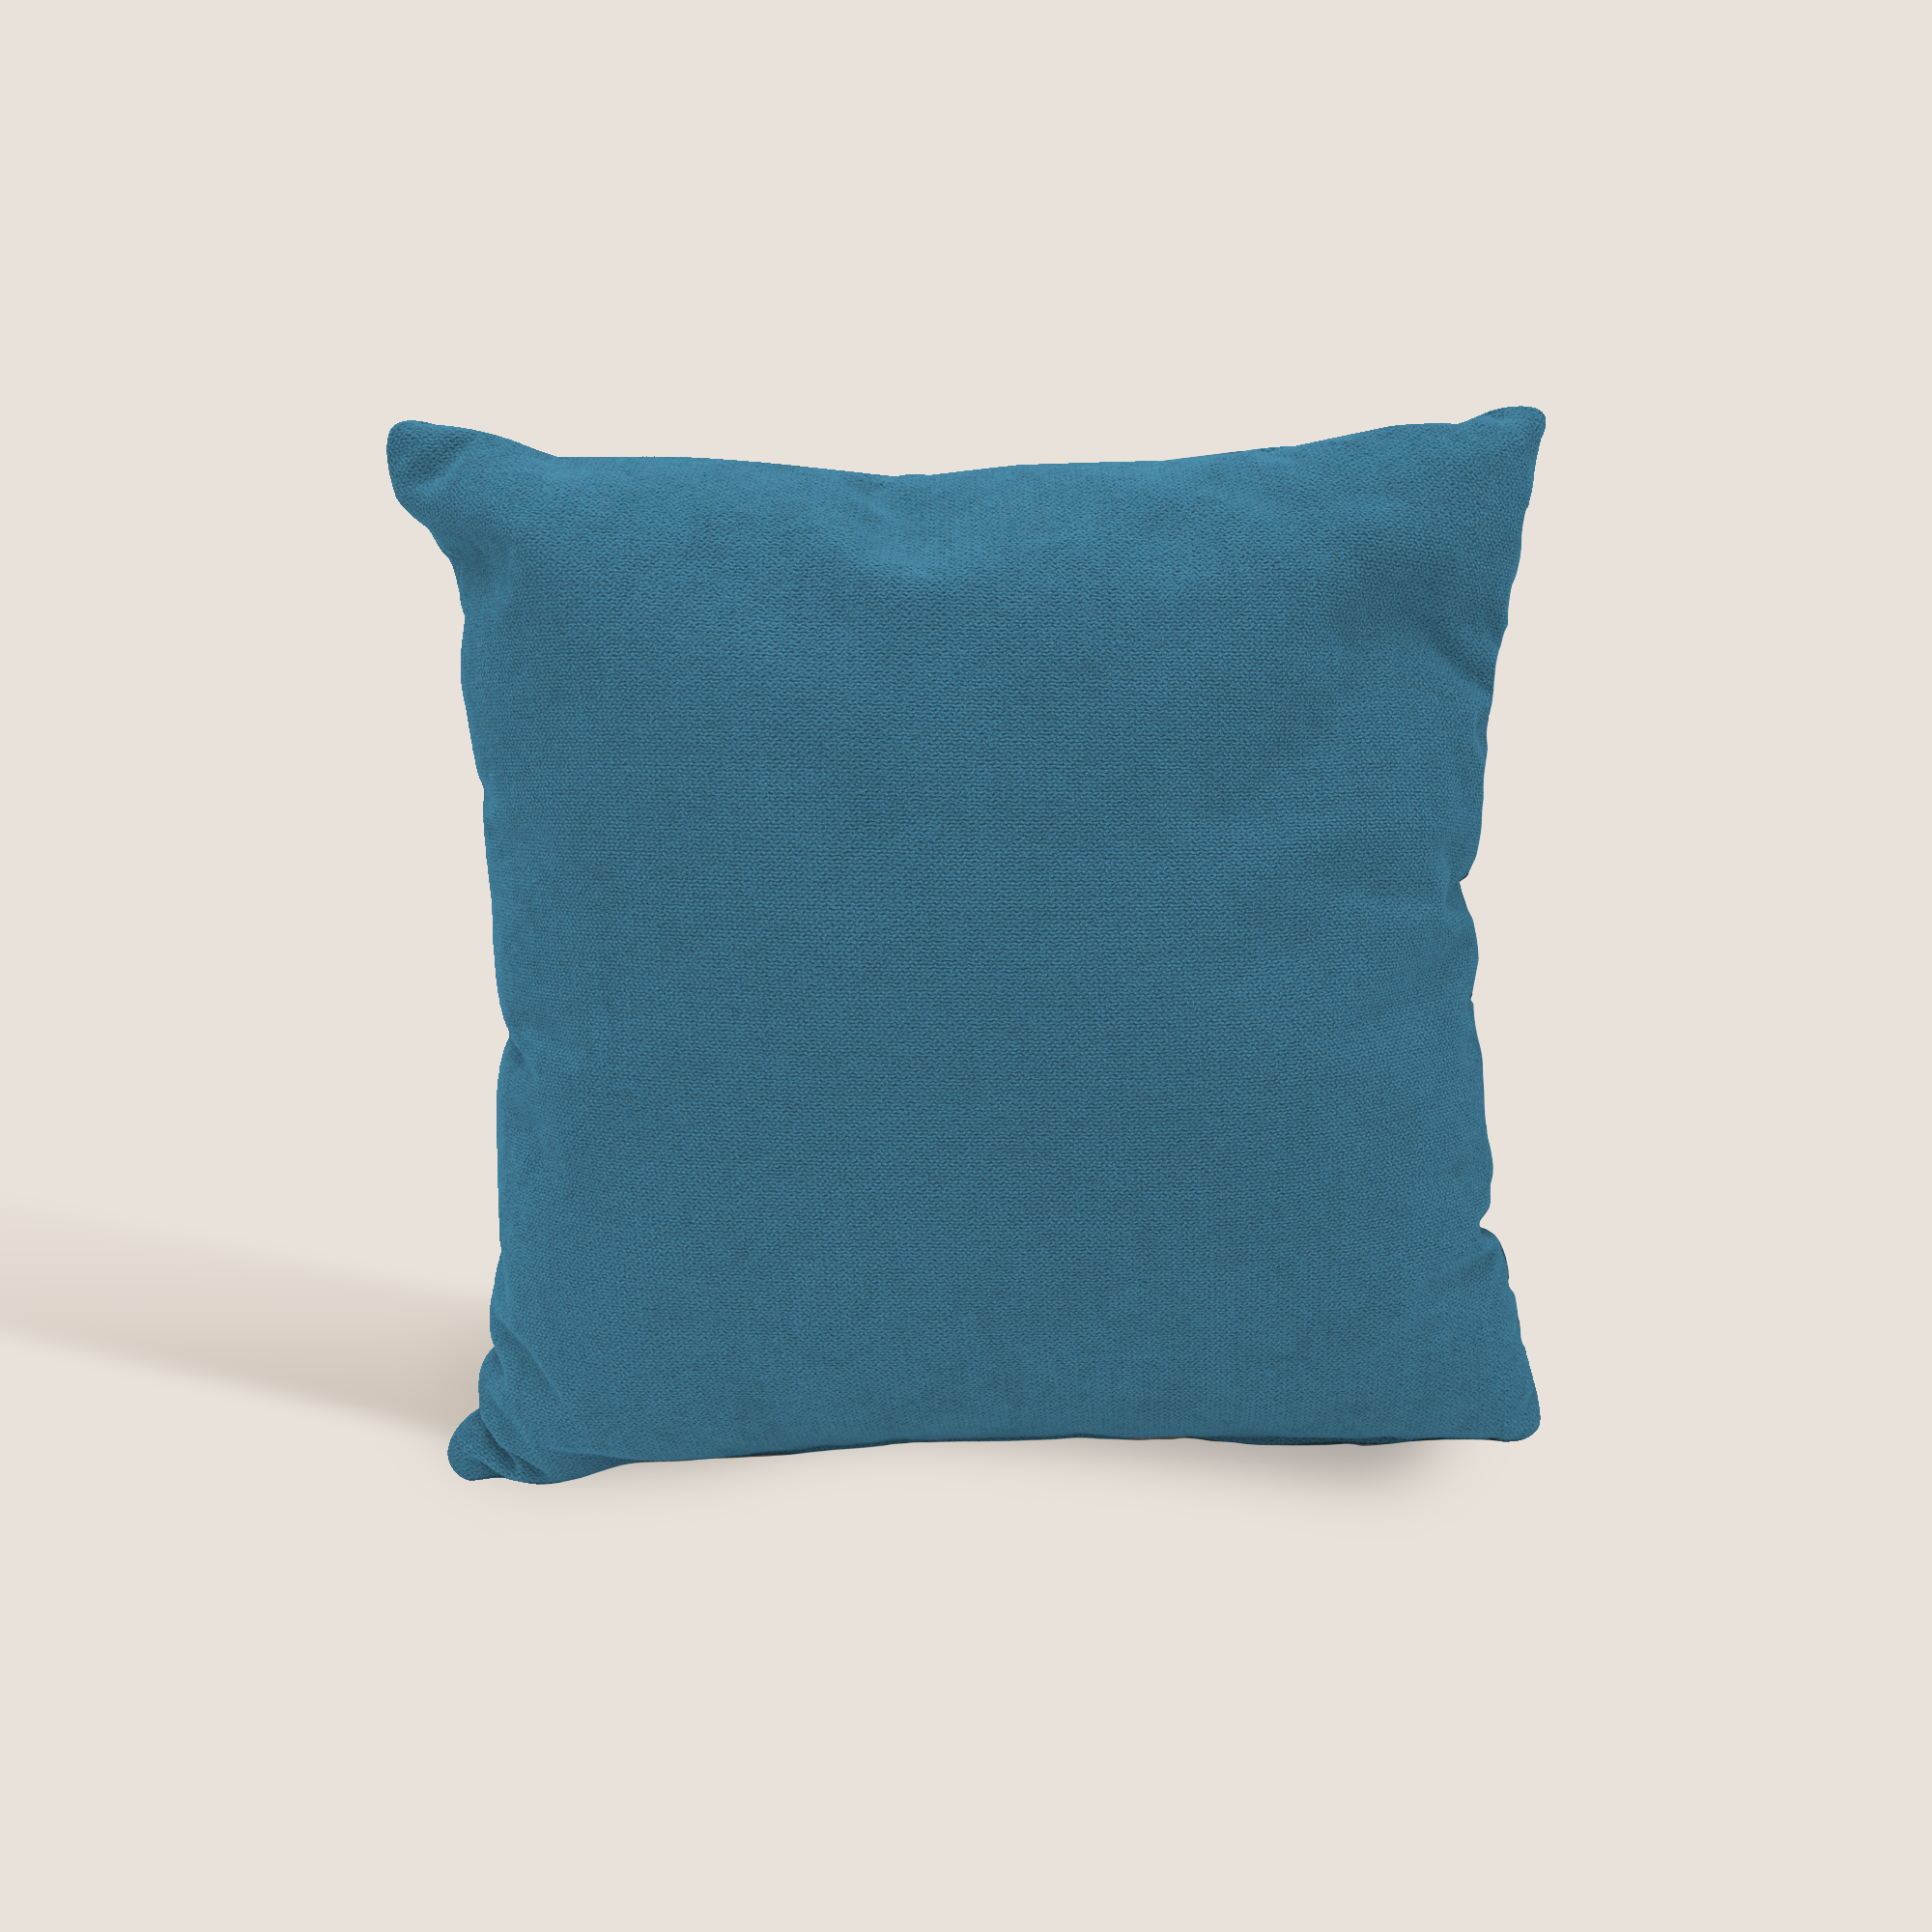 Destiny cuscino disponibile in diversi colori realizzato in tessuto morbido impermeabile T02